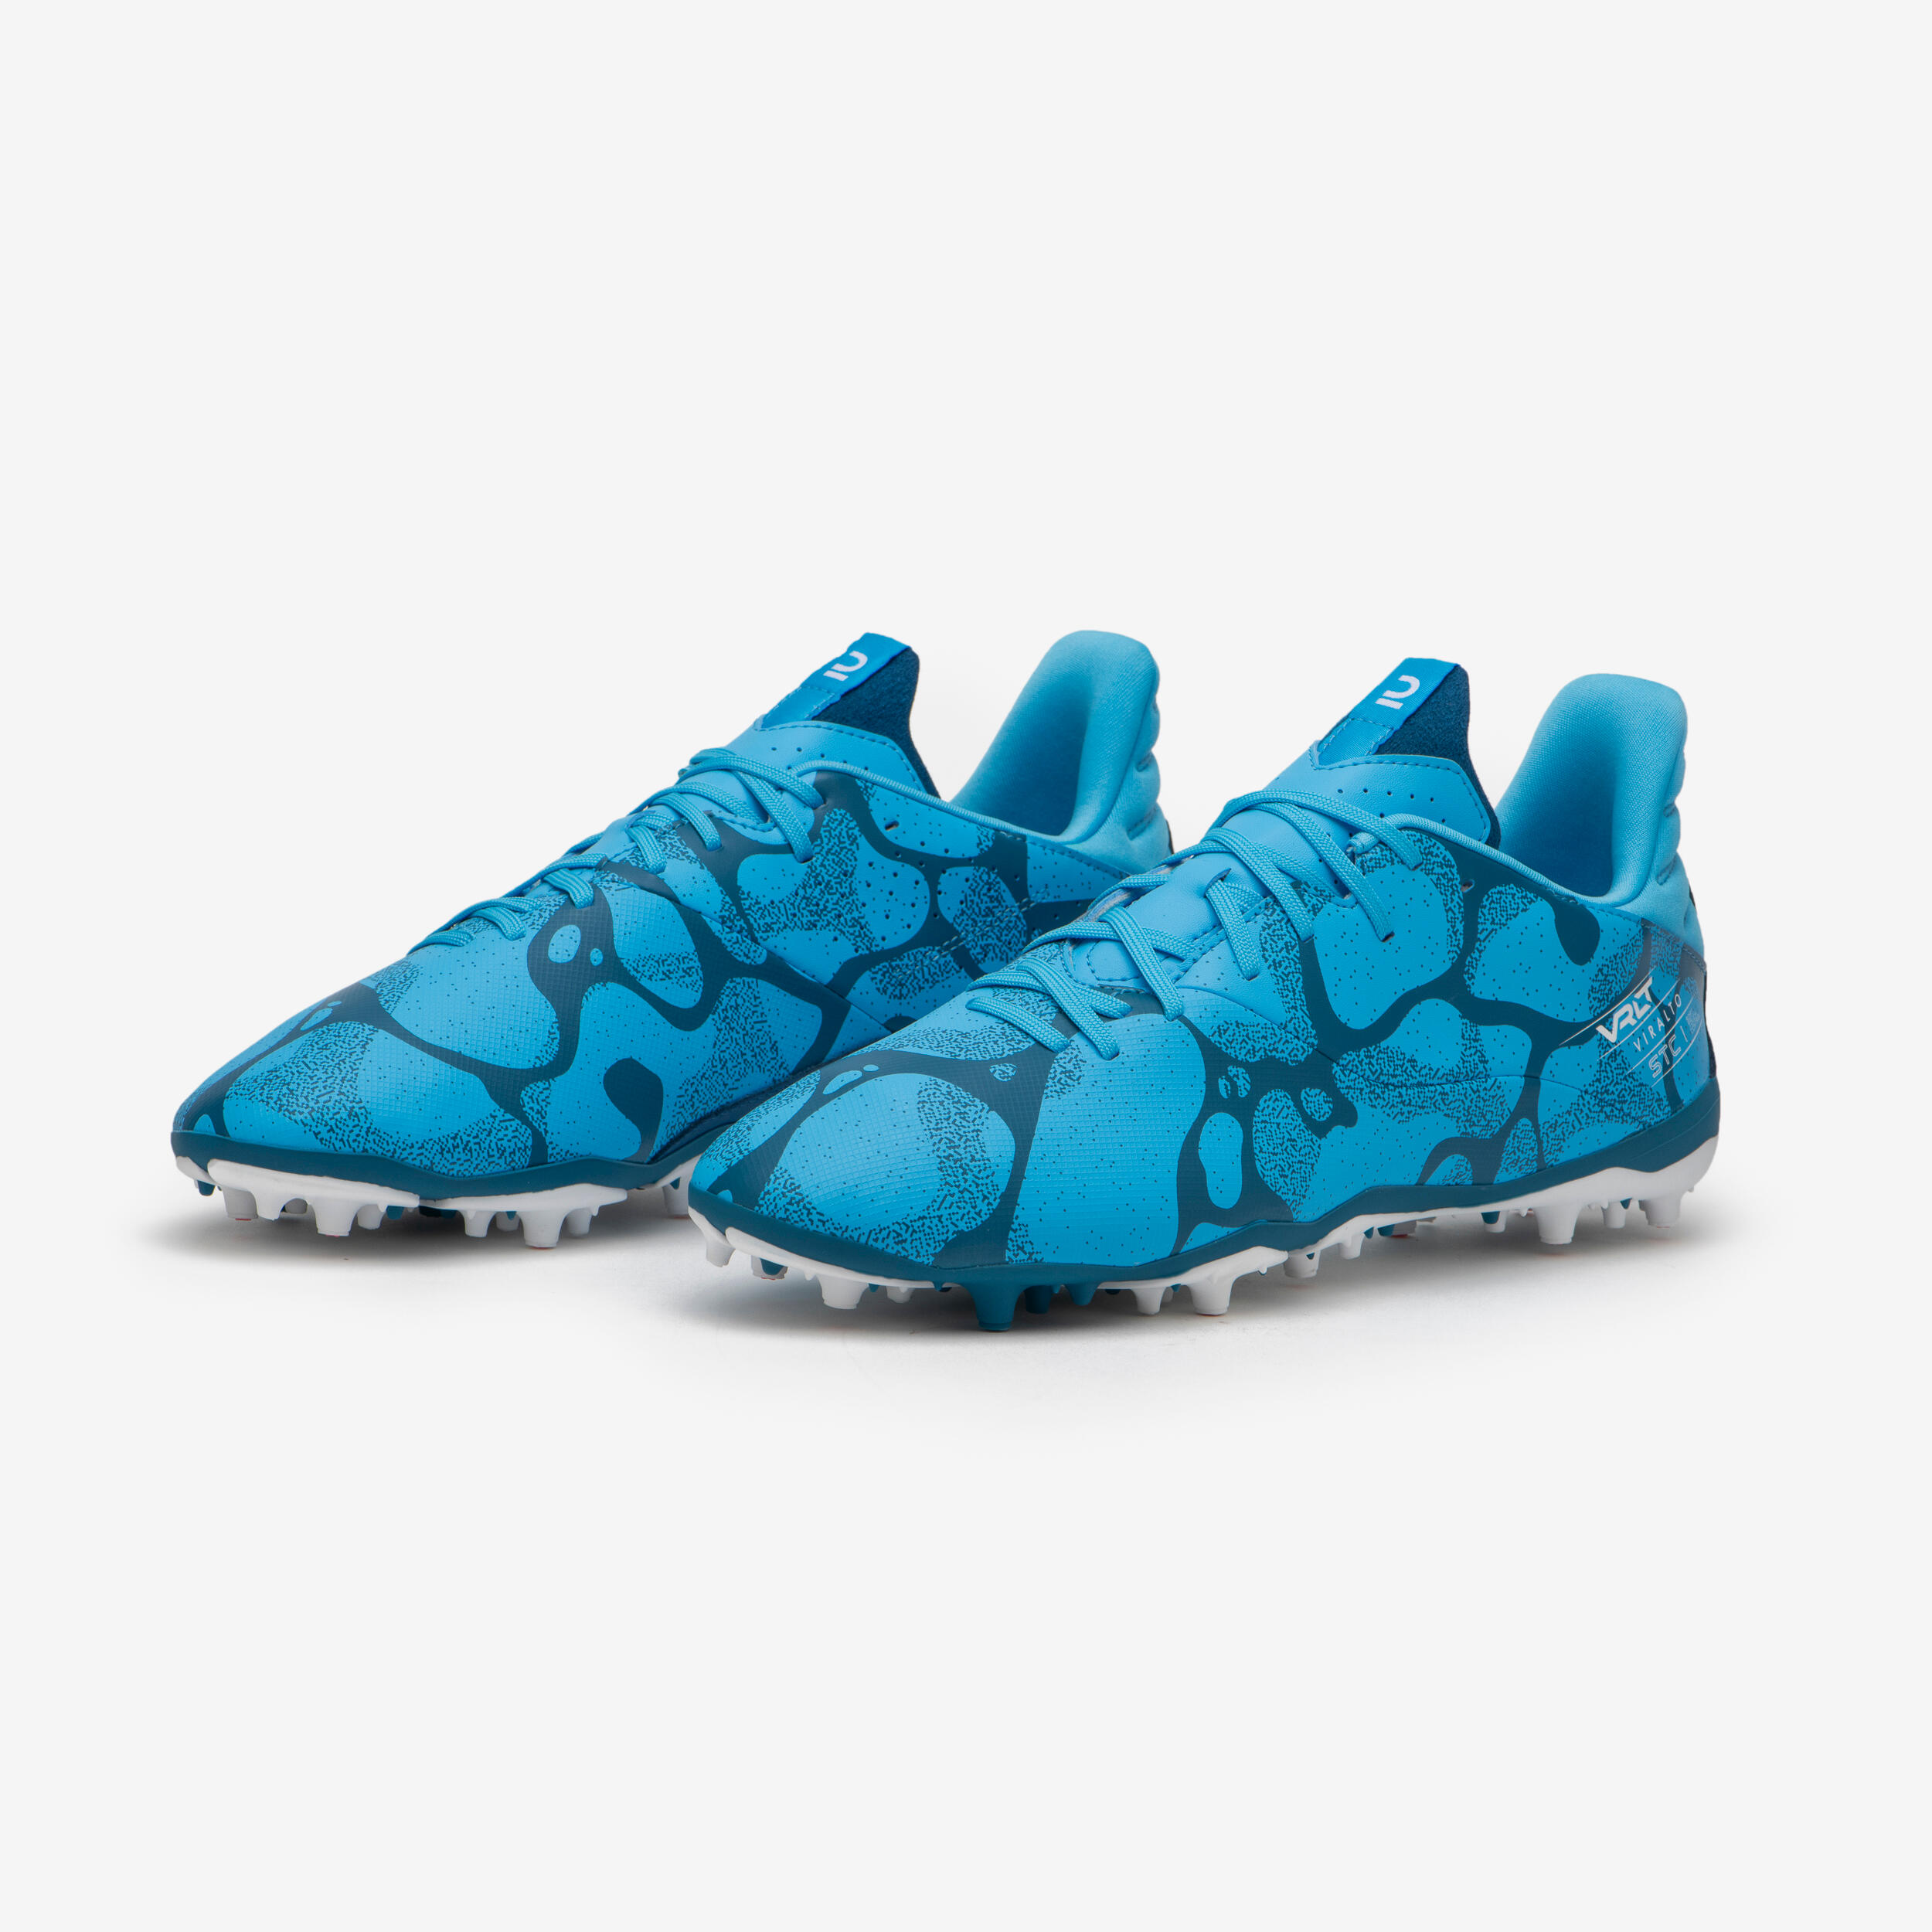 Football Boots Viralto I MG/AG - Turquoise 7/7